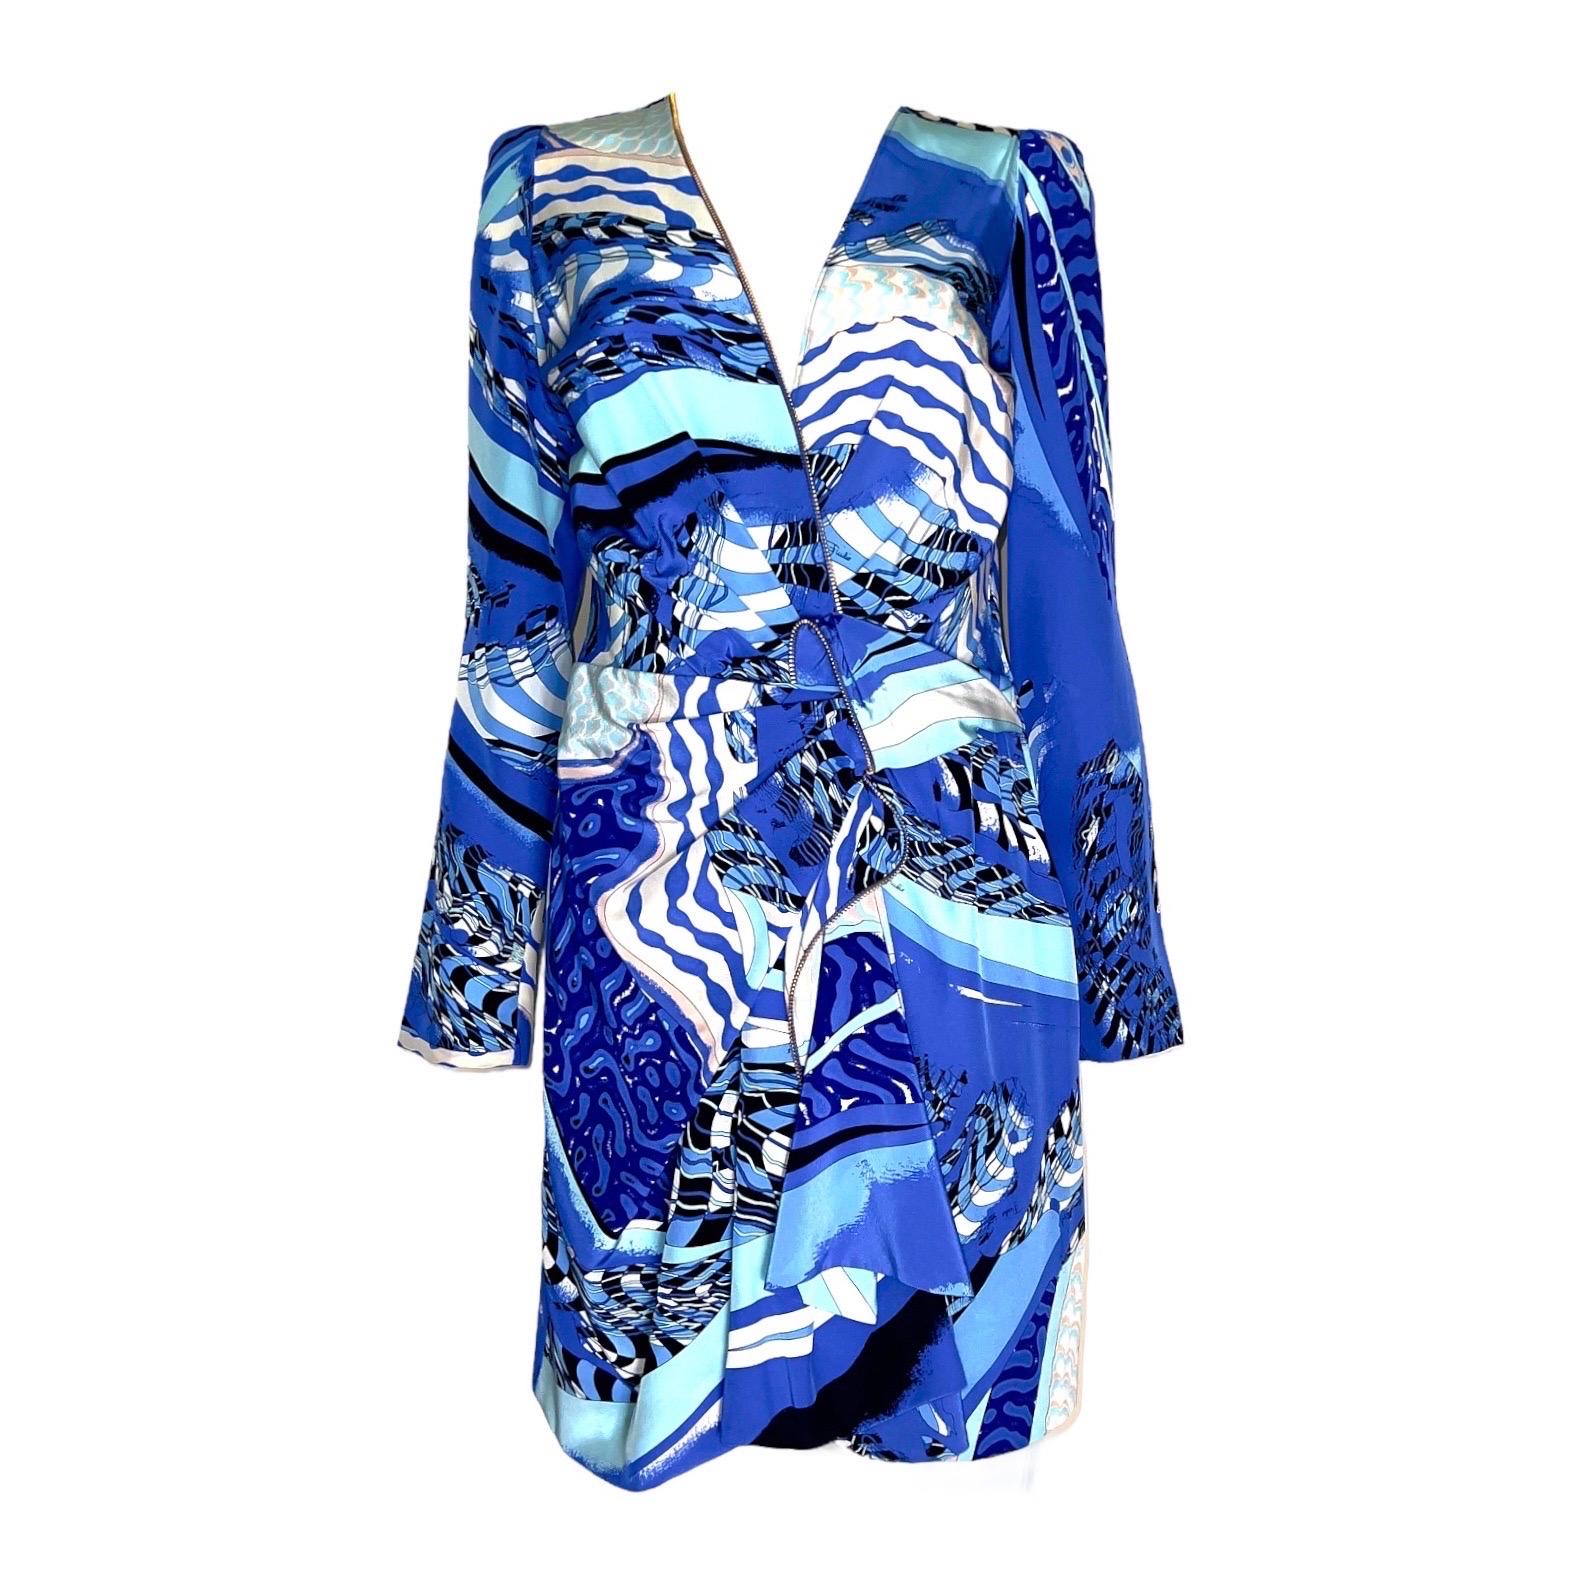 UNWORN Emilio Pucci Signature Print Faux Wrap Dress with Zip Details 44 1